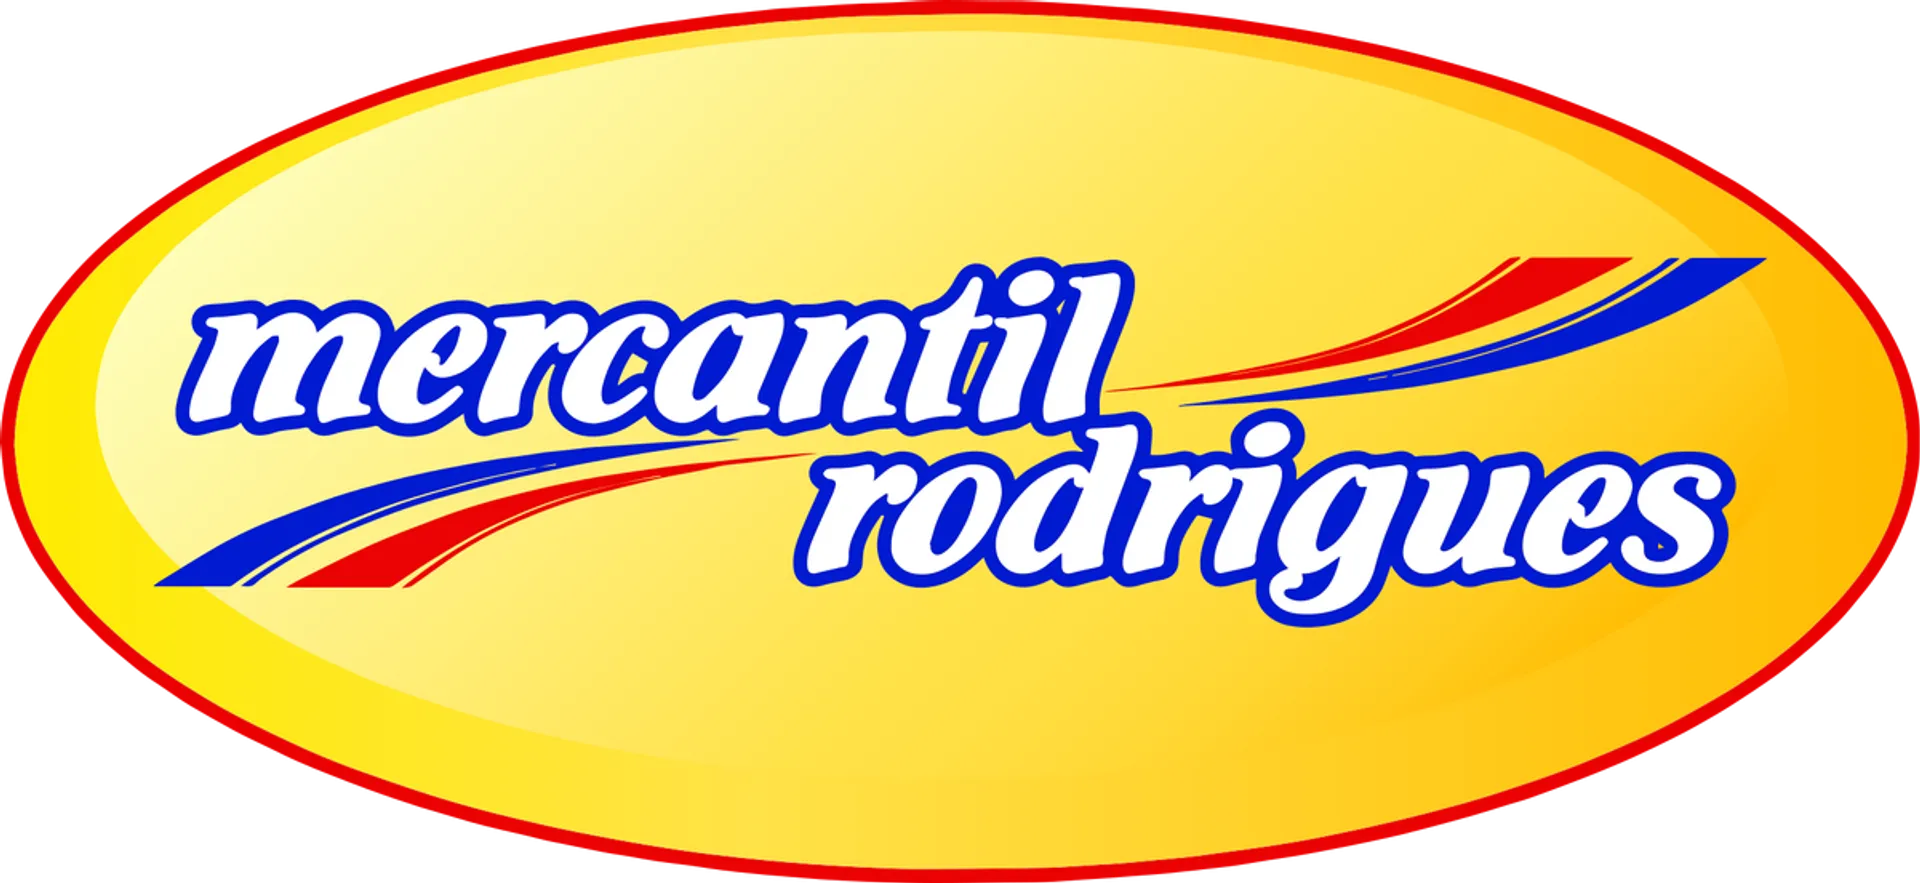 MERCANTIL RODRIGUES logo de catálogo